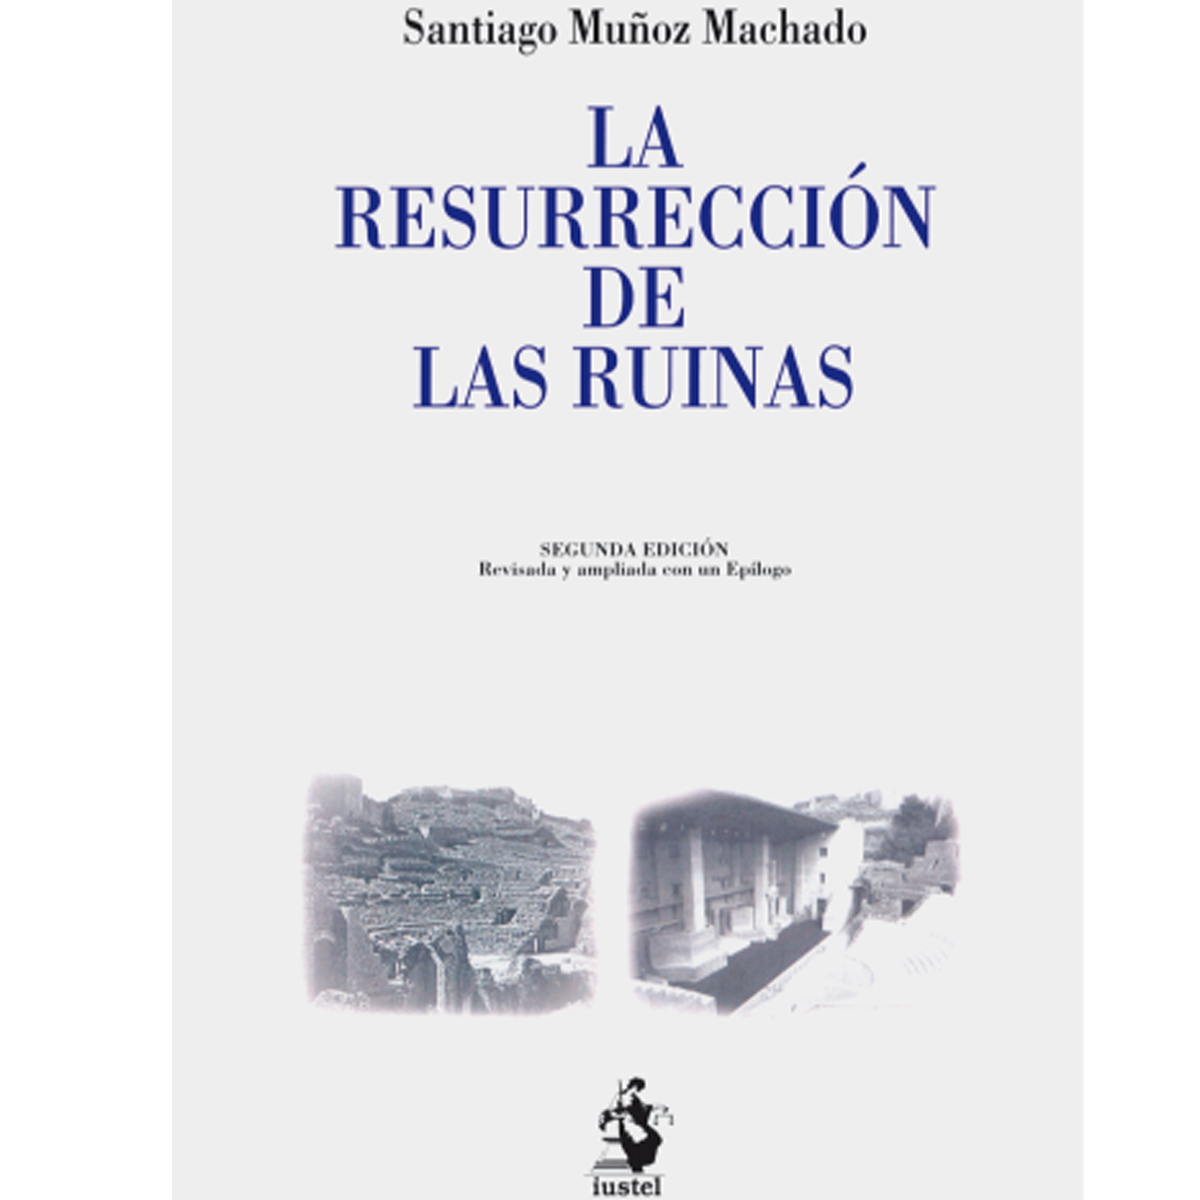 La resurrección de las ruinas